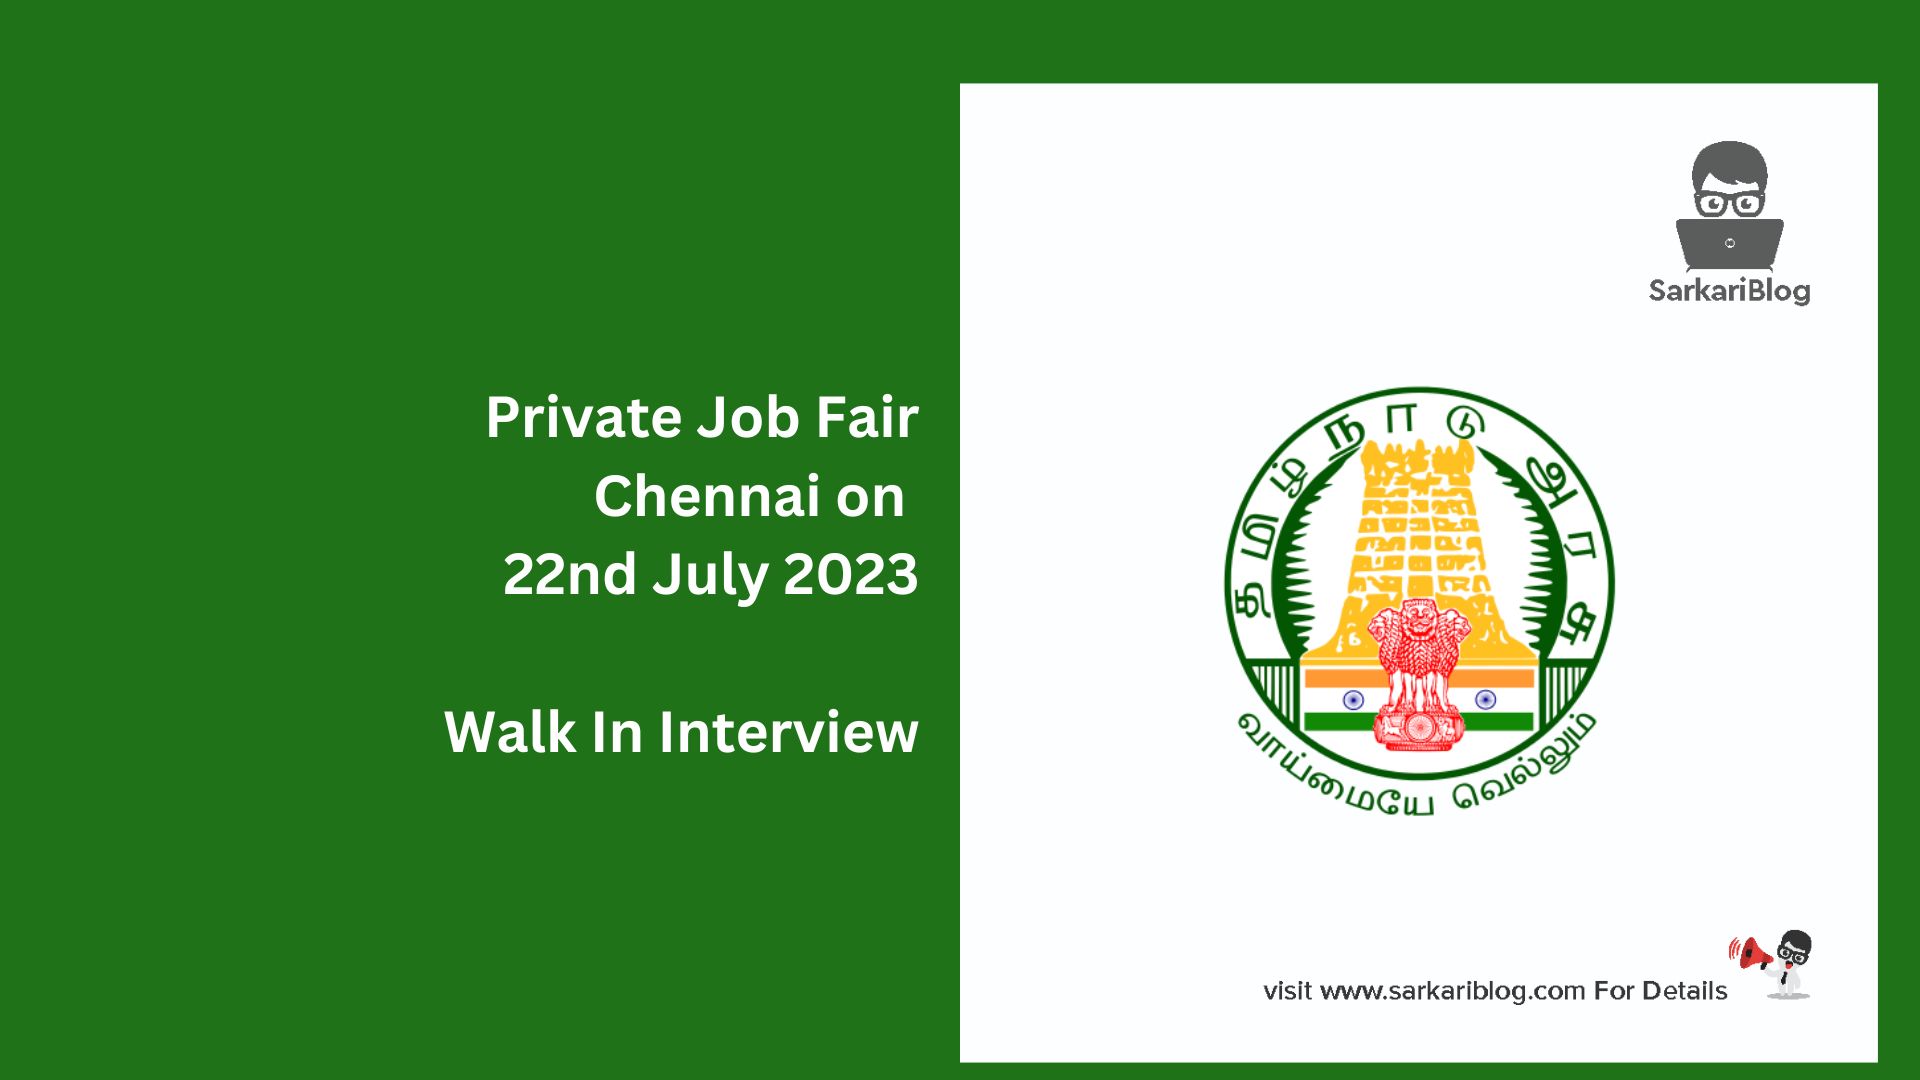 Private Job Fair Chennai on 22nd July 2023